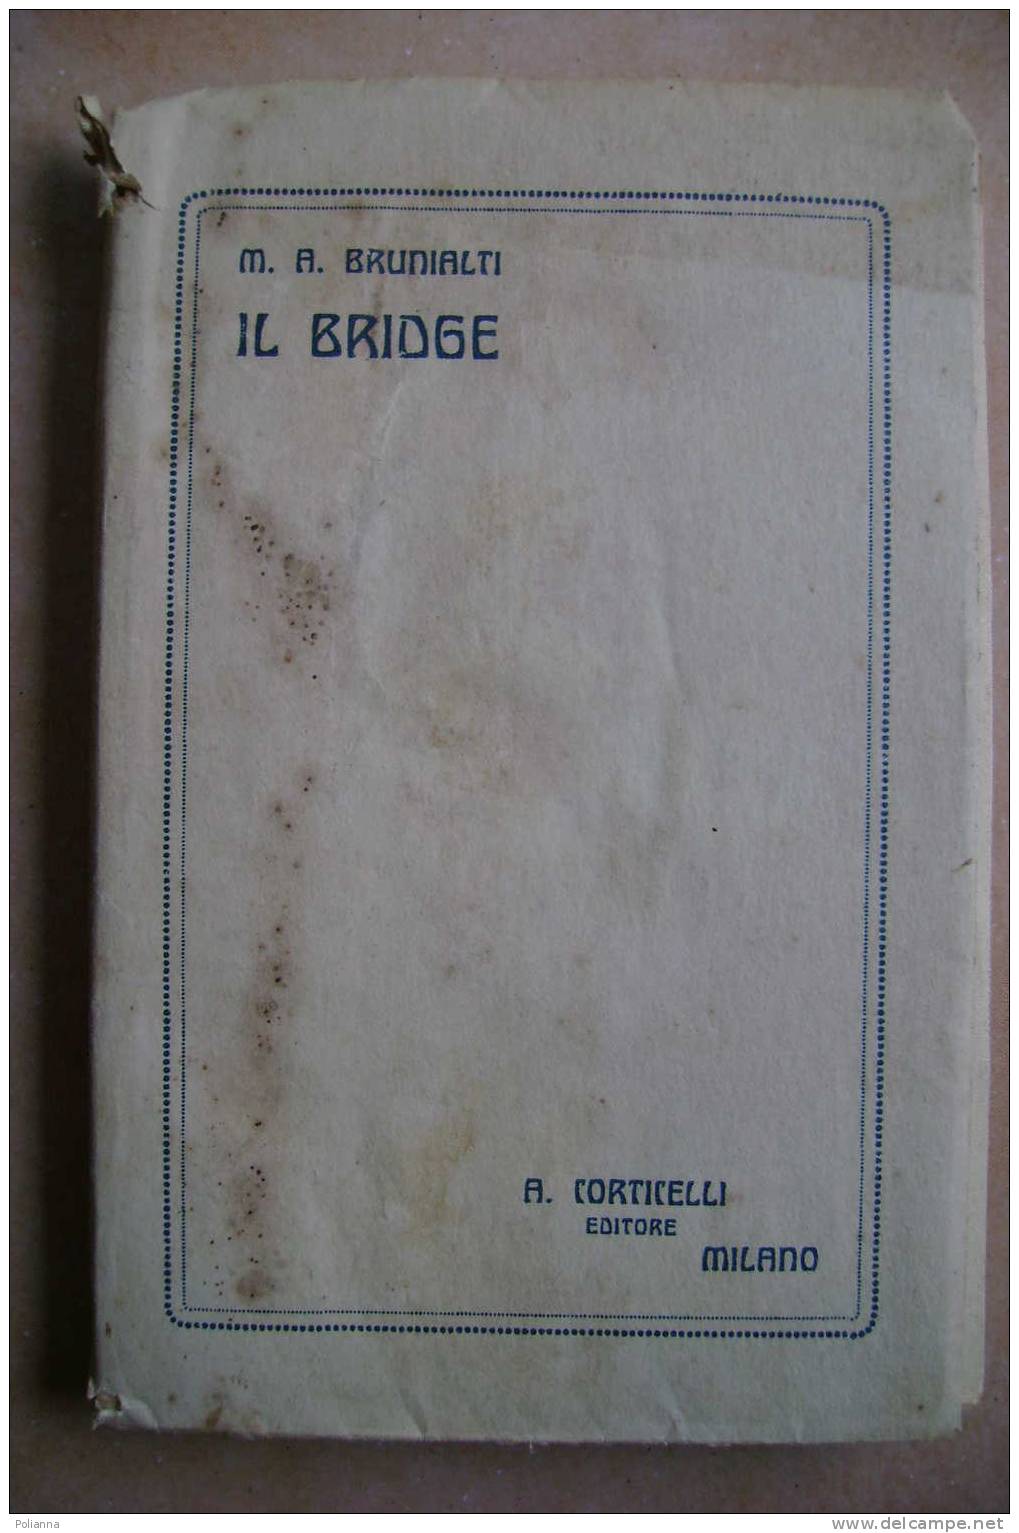 PDM/16 Brunialti IL BRIDGE Corticelli Editore 1923/giochi Carte - Games